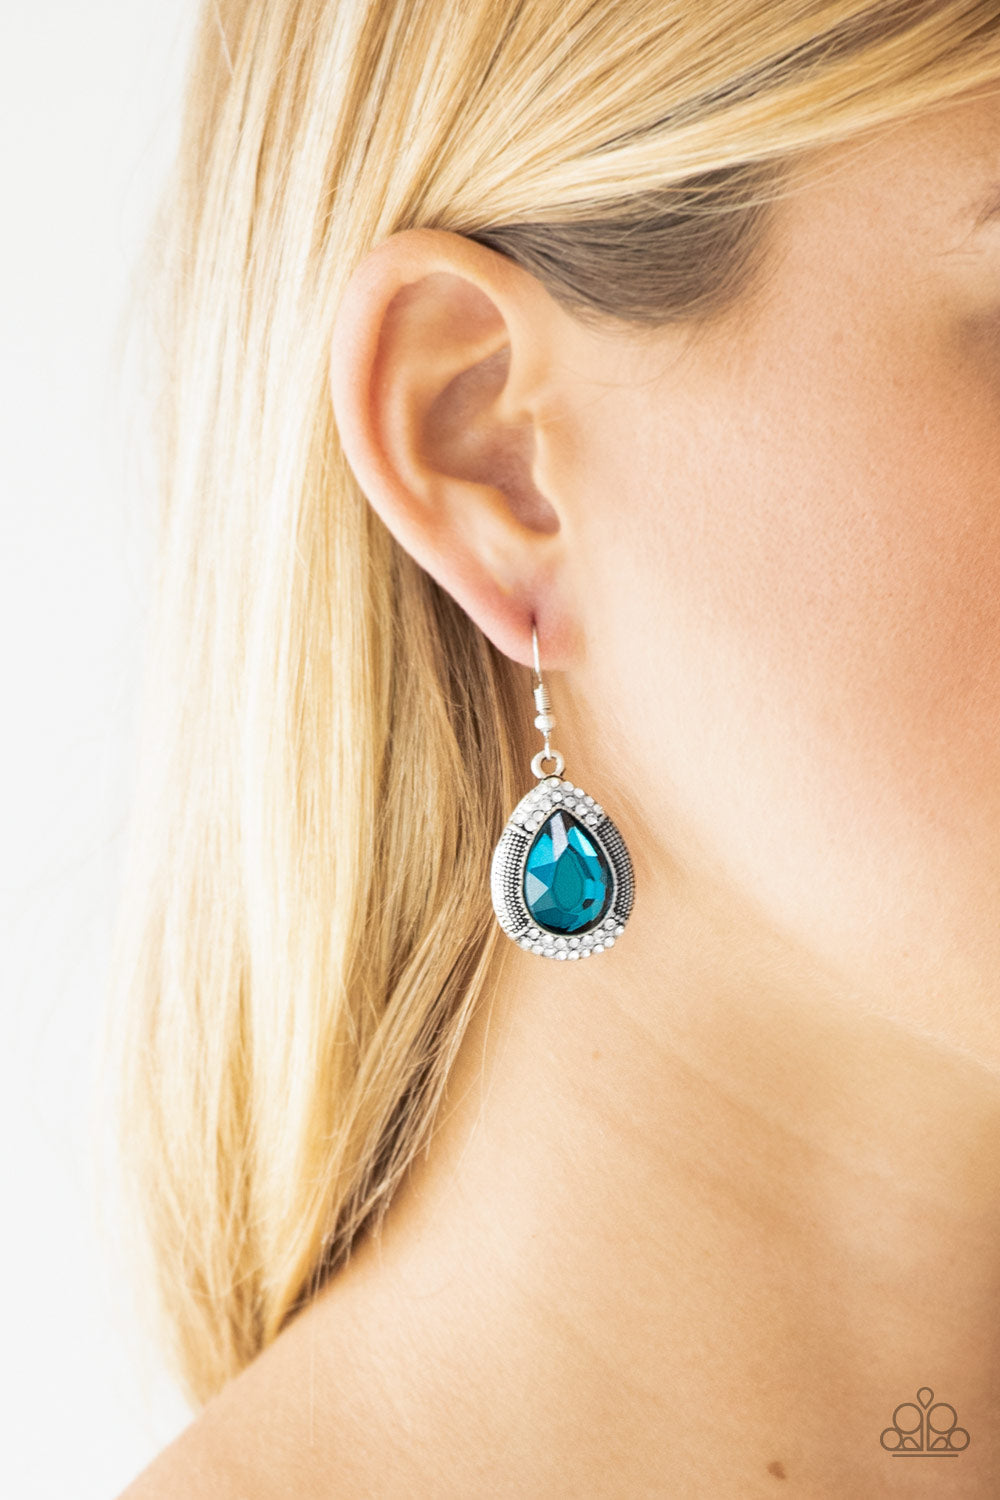 Paparazzi Grandmaster Shimmer - Blue Teardrop Gem - Silver Earrings - $5 Jewelry With Ashley Swint